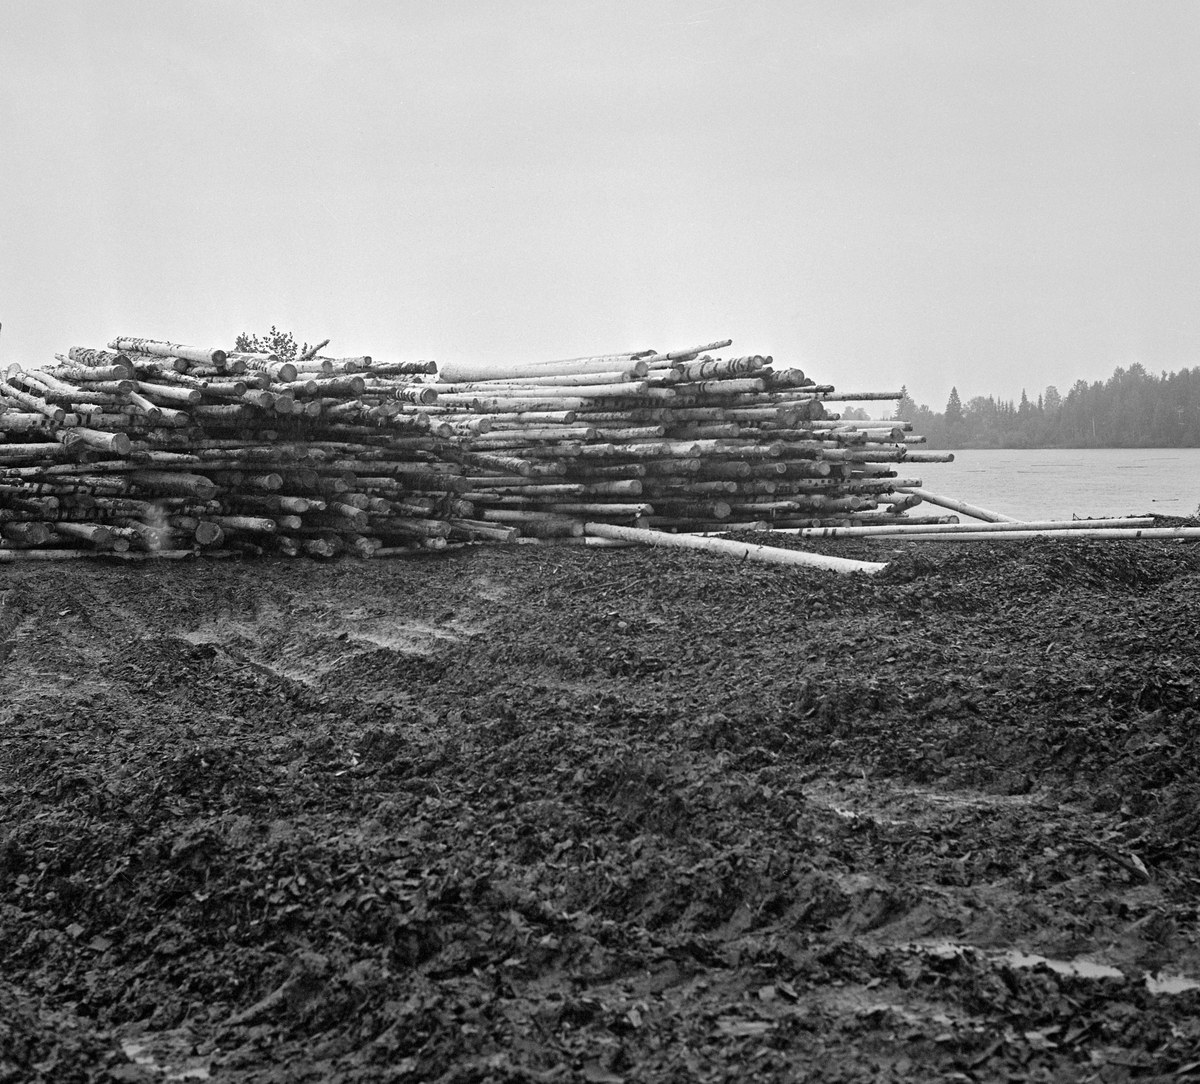 Fra tømmerterminalen på Vesterhaug i Heradsbygda i Elverum (Hedmark). Fotografiet er antakelig tatt i begynnelsen av 1970-åra, dette anlegget var nytt. Vi ser ei diger velte, der tømmerstokkene lå parallelt med strømretningen i Glomma, som vi skimter til høyre i bakgrunnen. Hensikten med denne løsningen var at tømmeret lettvint skulle kunne skyves utfor elveskråningen ved hjelp av en anleggsmaskin når vannføringa var slik at det passet å starte fløtinga. Det tømmeret vi ser her var maskinbarket slipvirke, altså råstoff til papirindustrien. De djupe kjøresporene i forgrunnen tyder på at dekket på velteplassen ikke var tilført masse som gav god bæreevne for tømmeret og de tunge anleggsmaskinene i fuktige perioder.